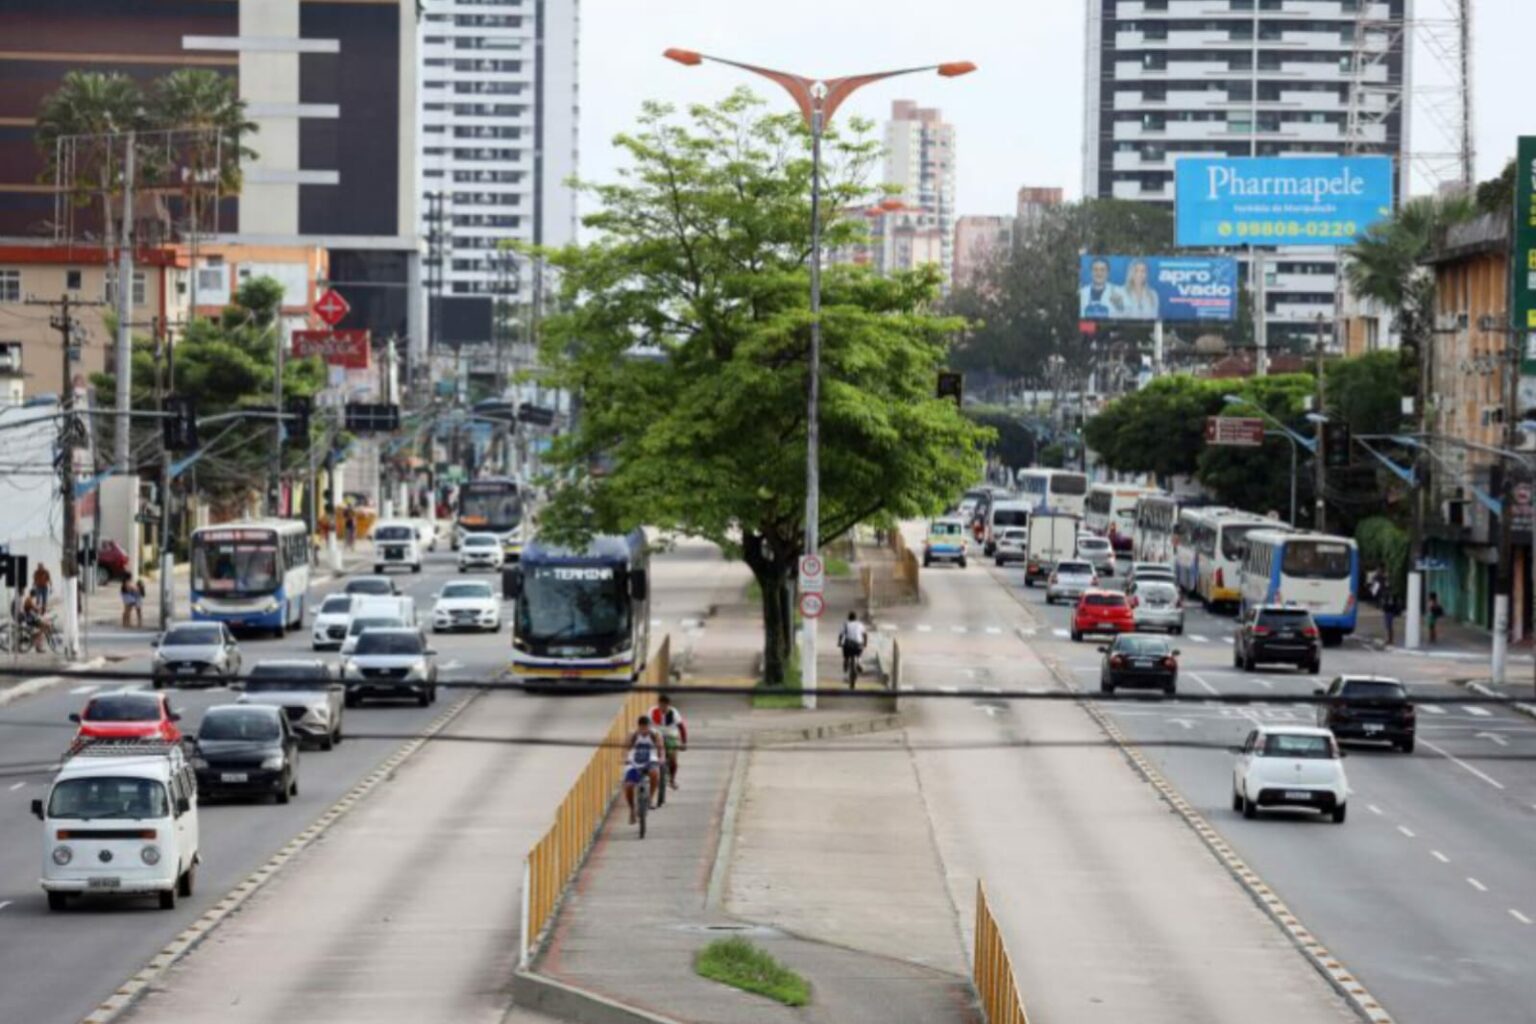 Pará reduz taxa de roubo de veículos, aponta Fórum Brasileiro de Segurança Pública